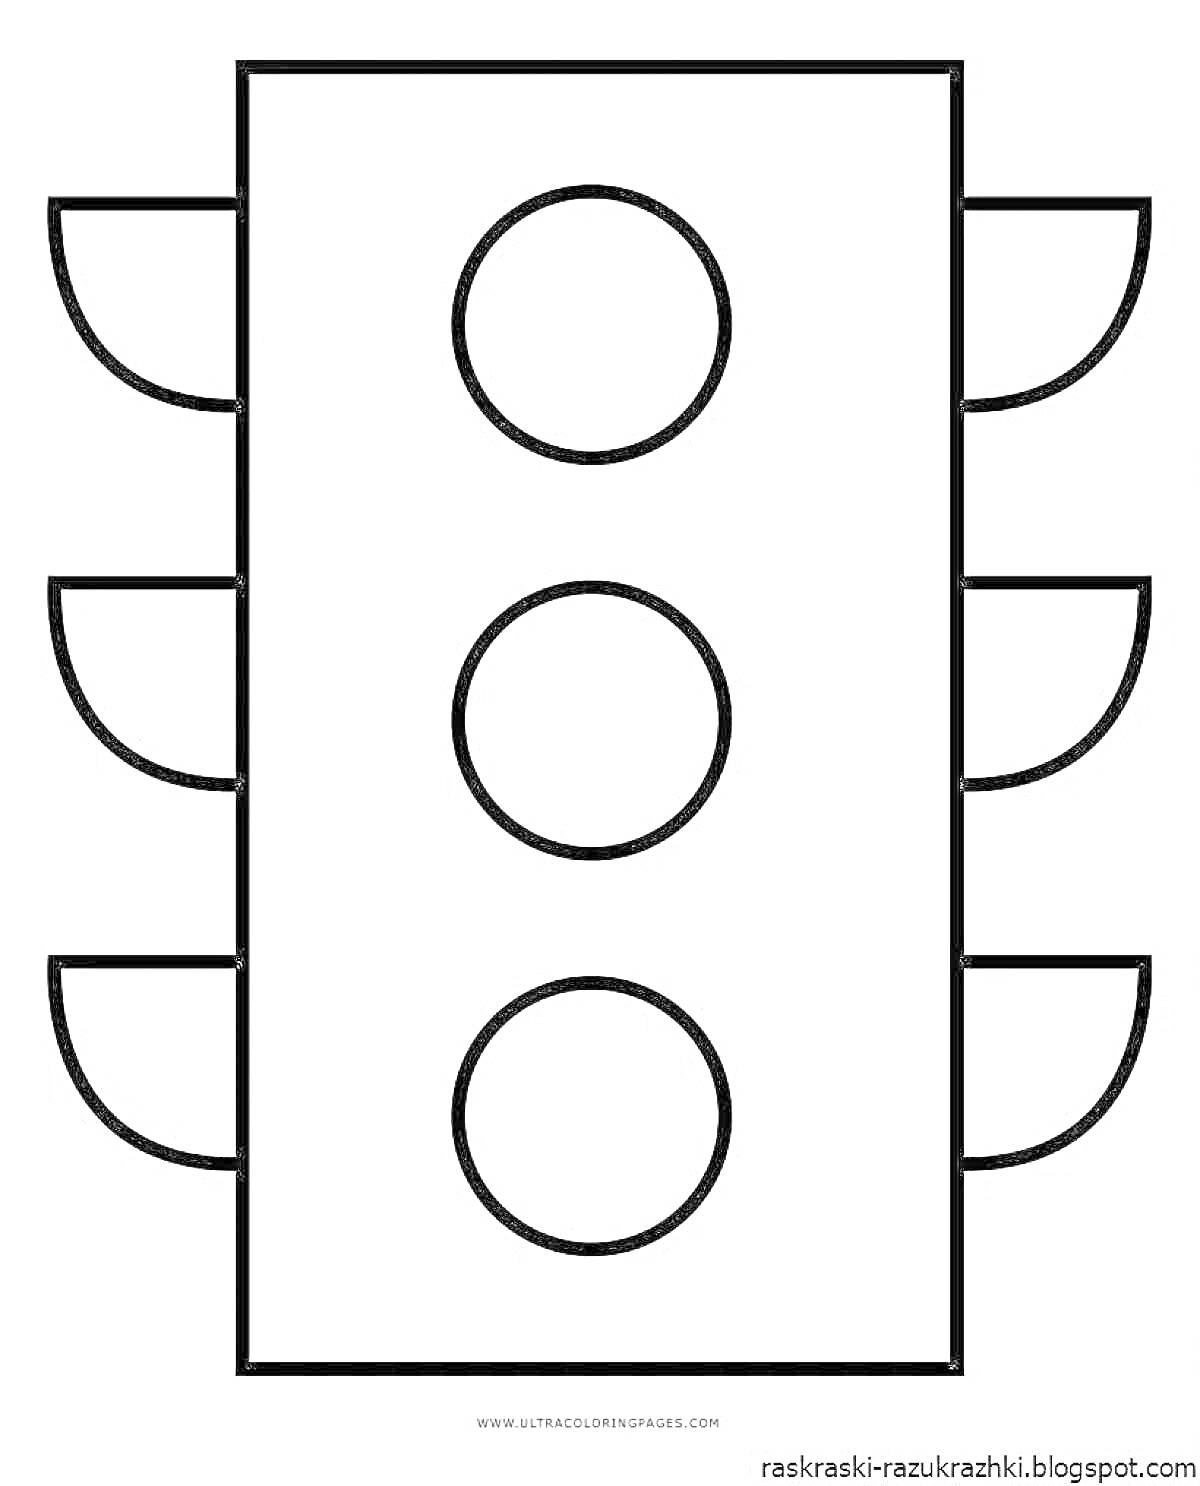 Раскраска Светофор с тремя круглыми сигналами и шестью боковыми элементами